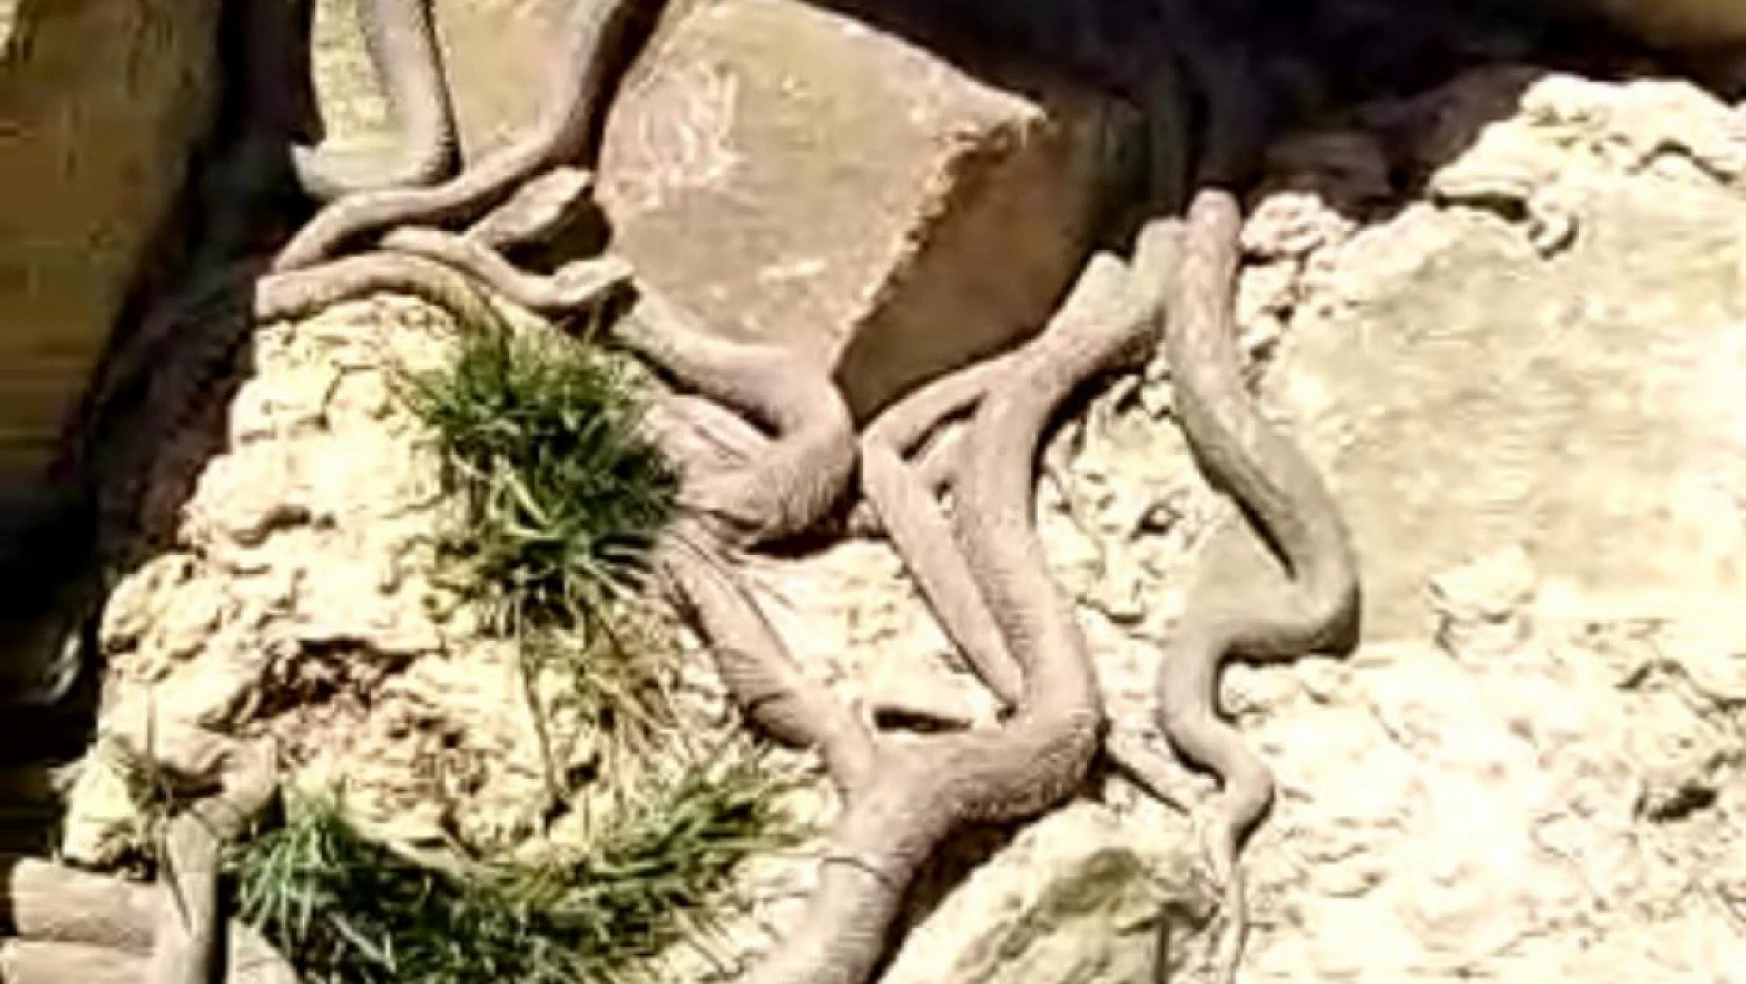 Ölümcül zehre sahip engerek yılanları sürü halinde görüntülendi